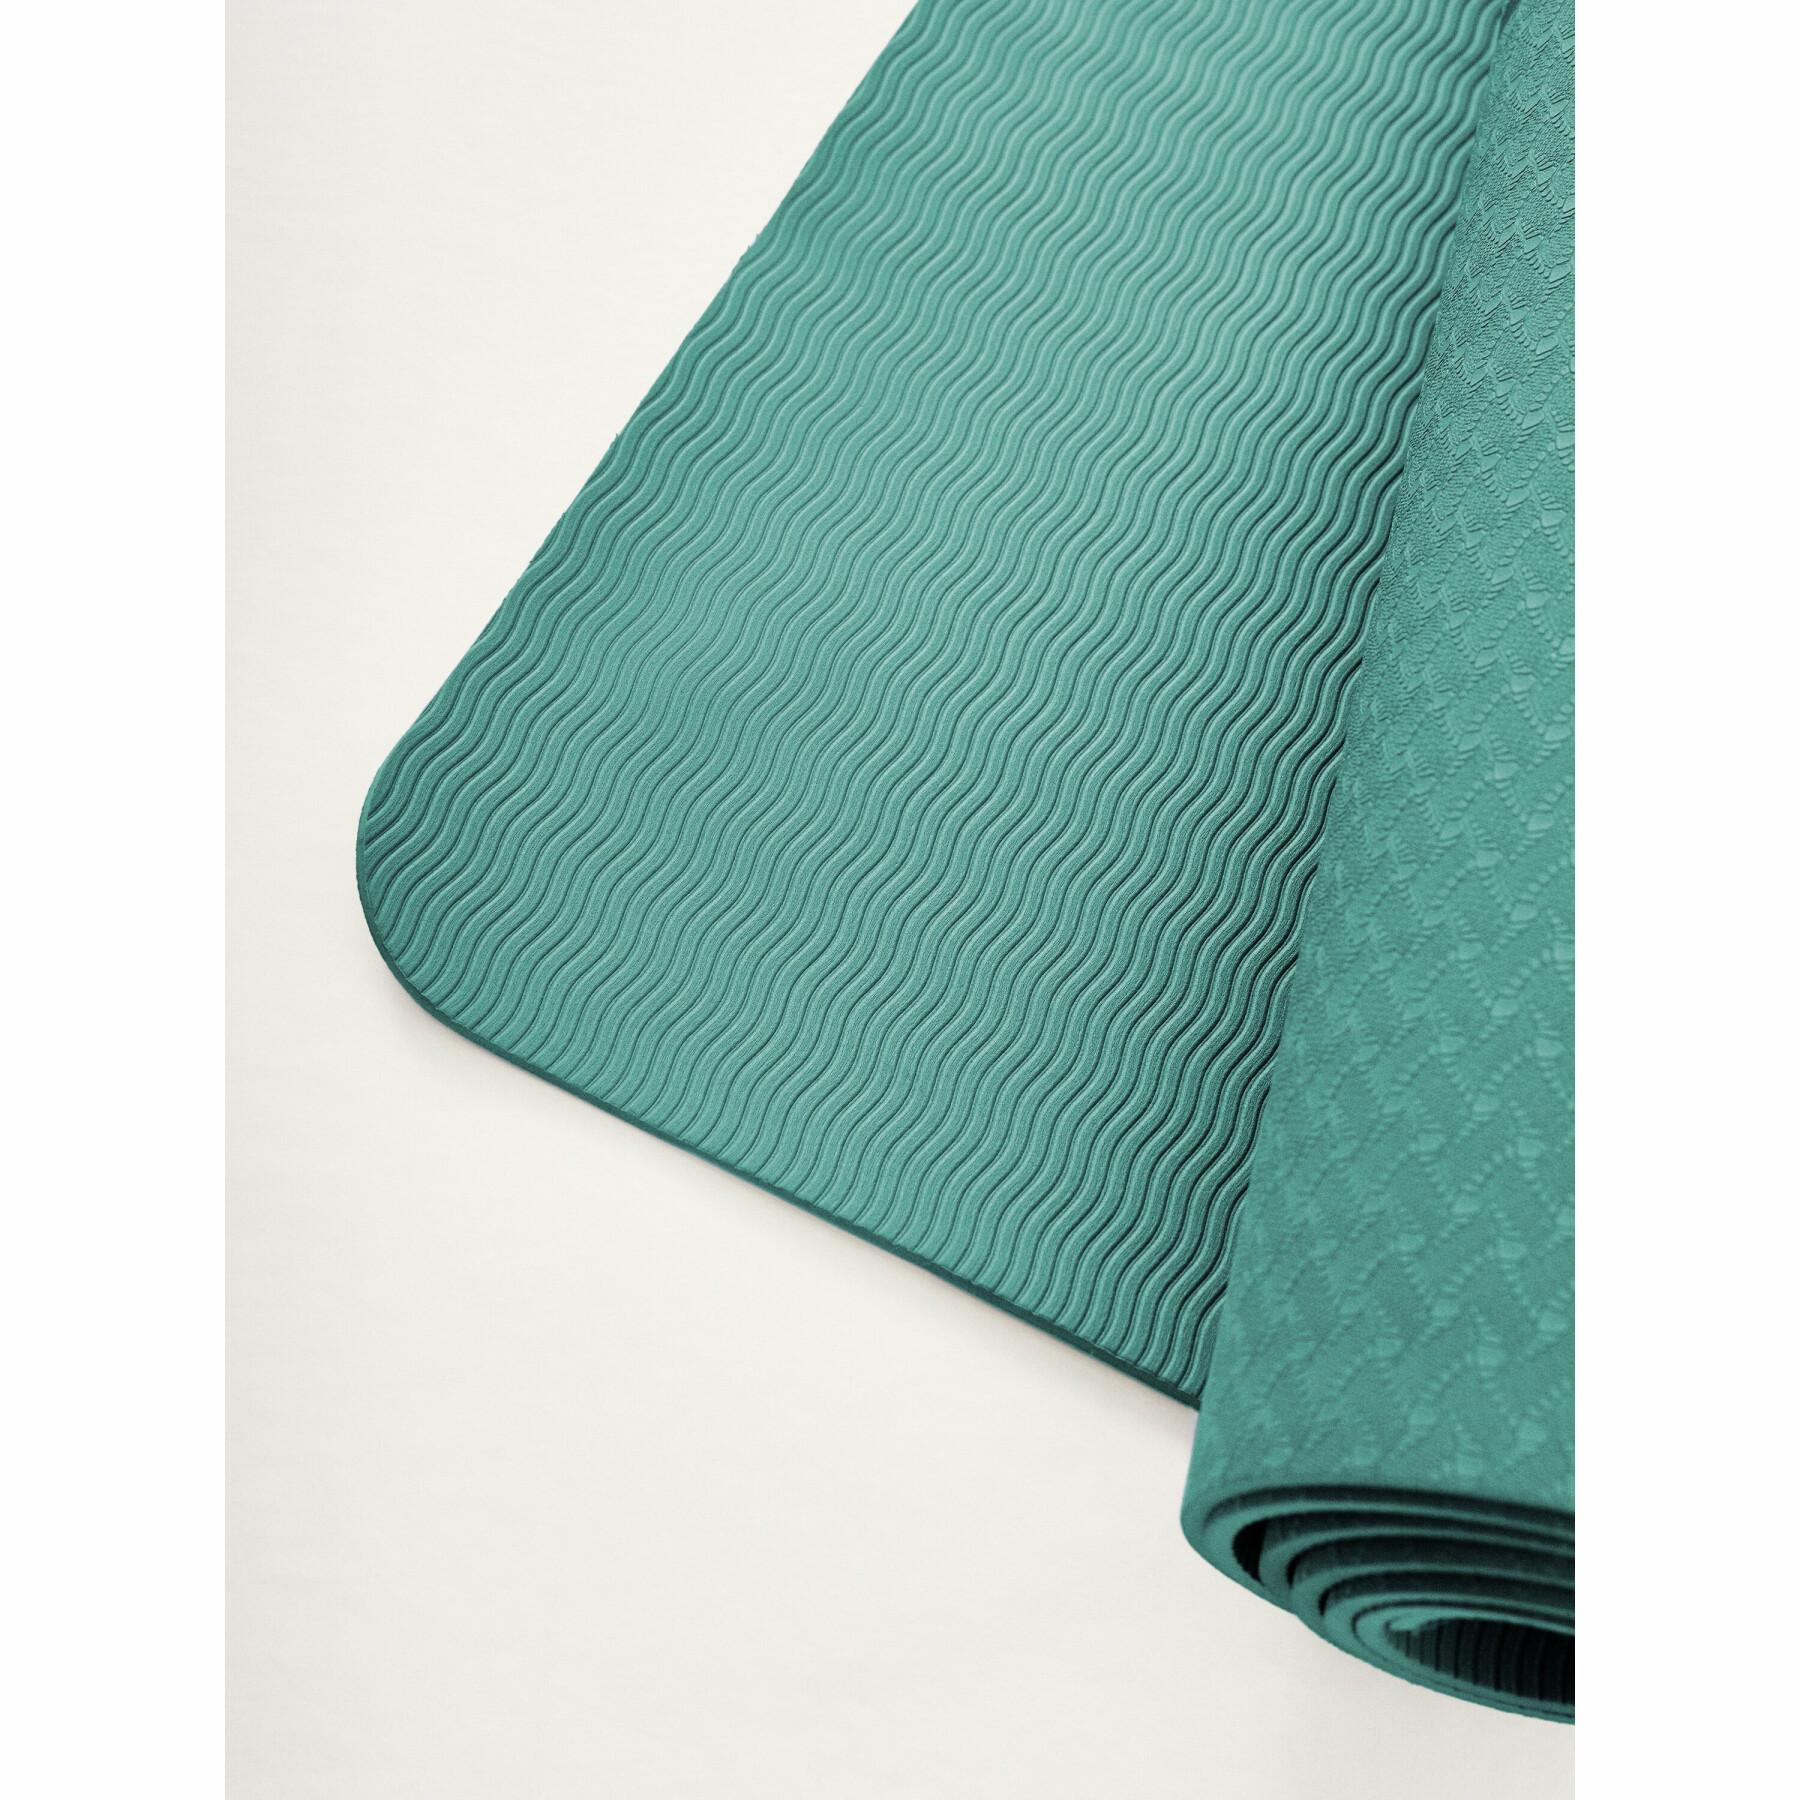 Floor mats Born Living Yoga Mat British 6mm